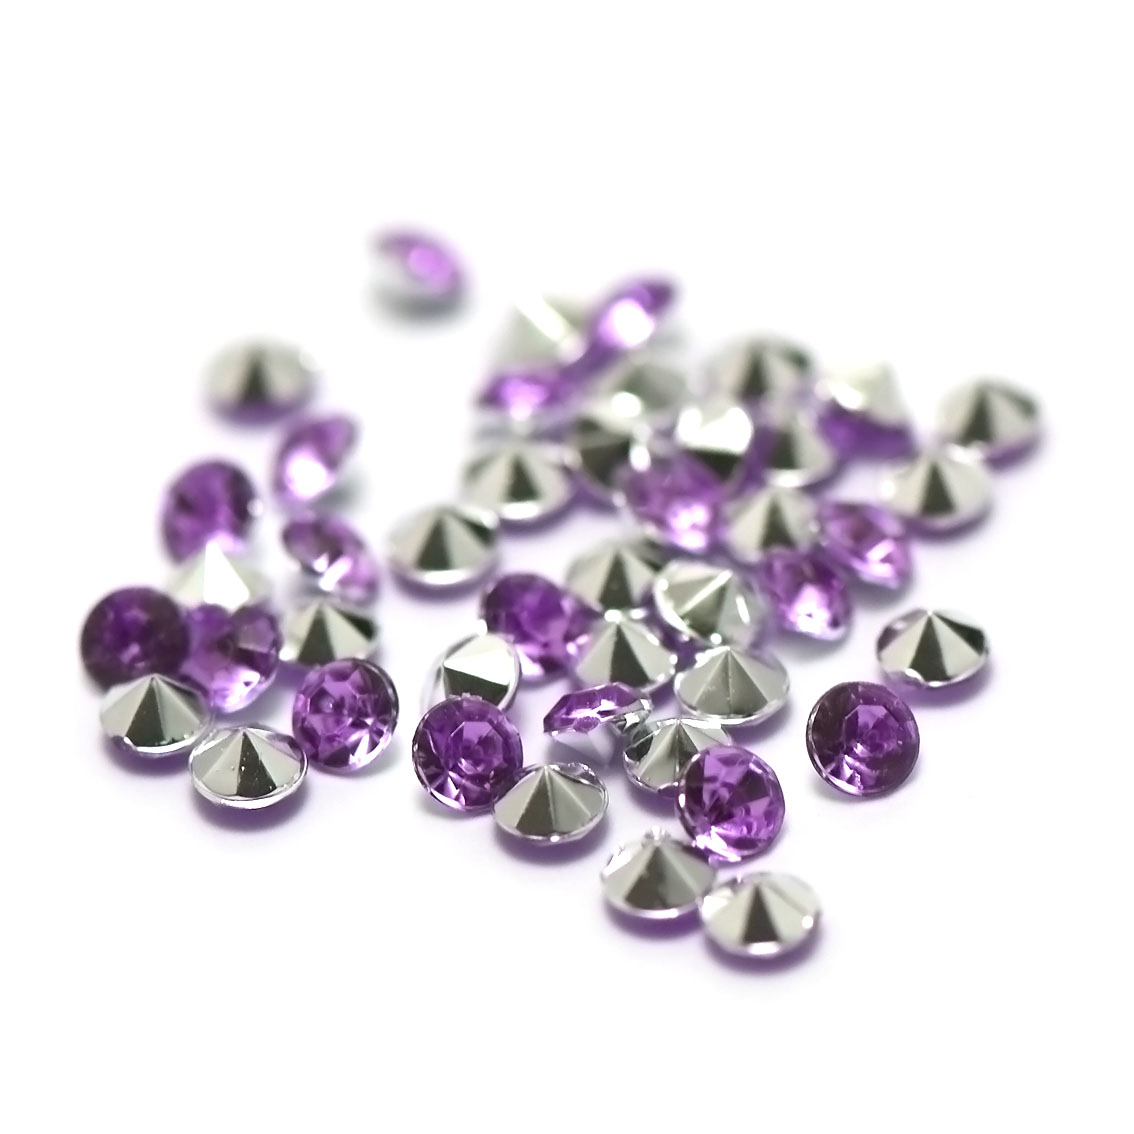 5g de perles strass en verre à coller cône 4 mm, violet